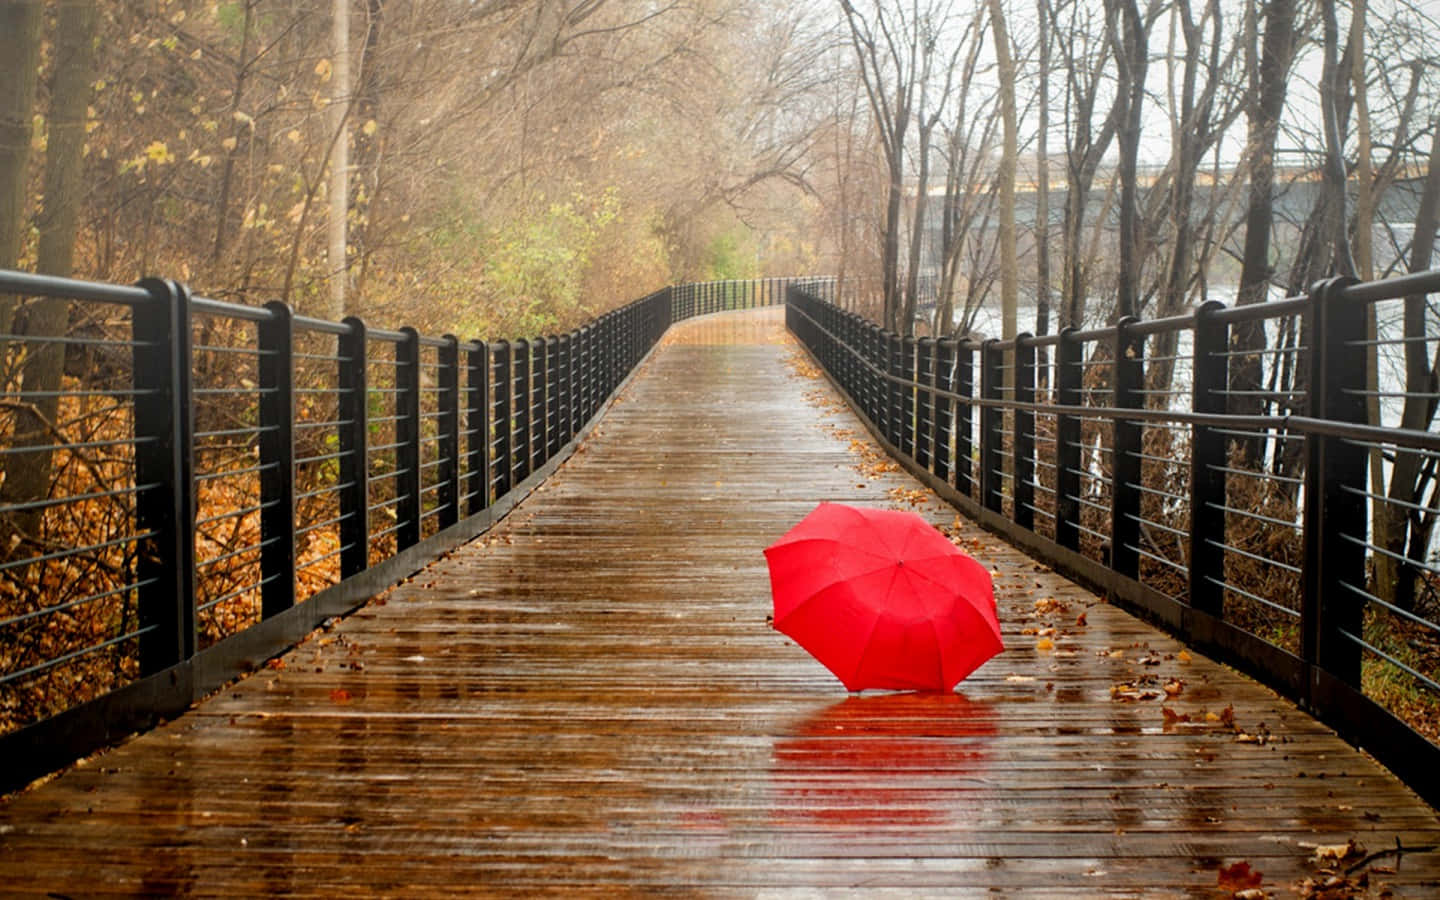 Immaginedi Un Ombrello Rosso Su Un Sentiero Di Legno In Una Giornata Di Pioggia.